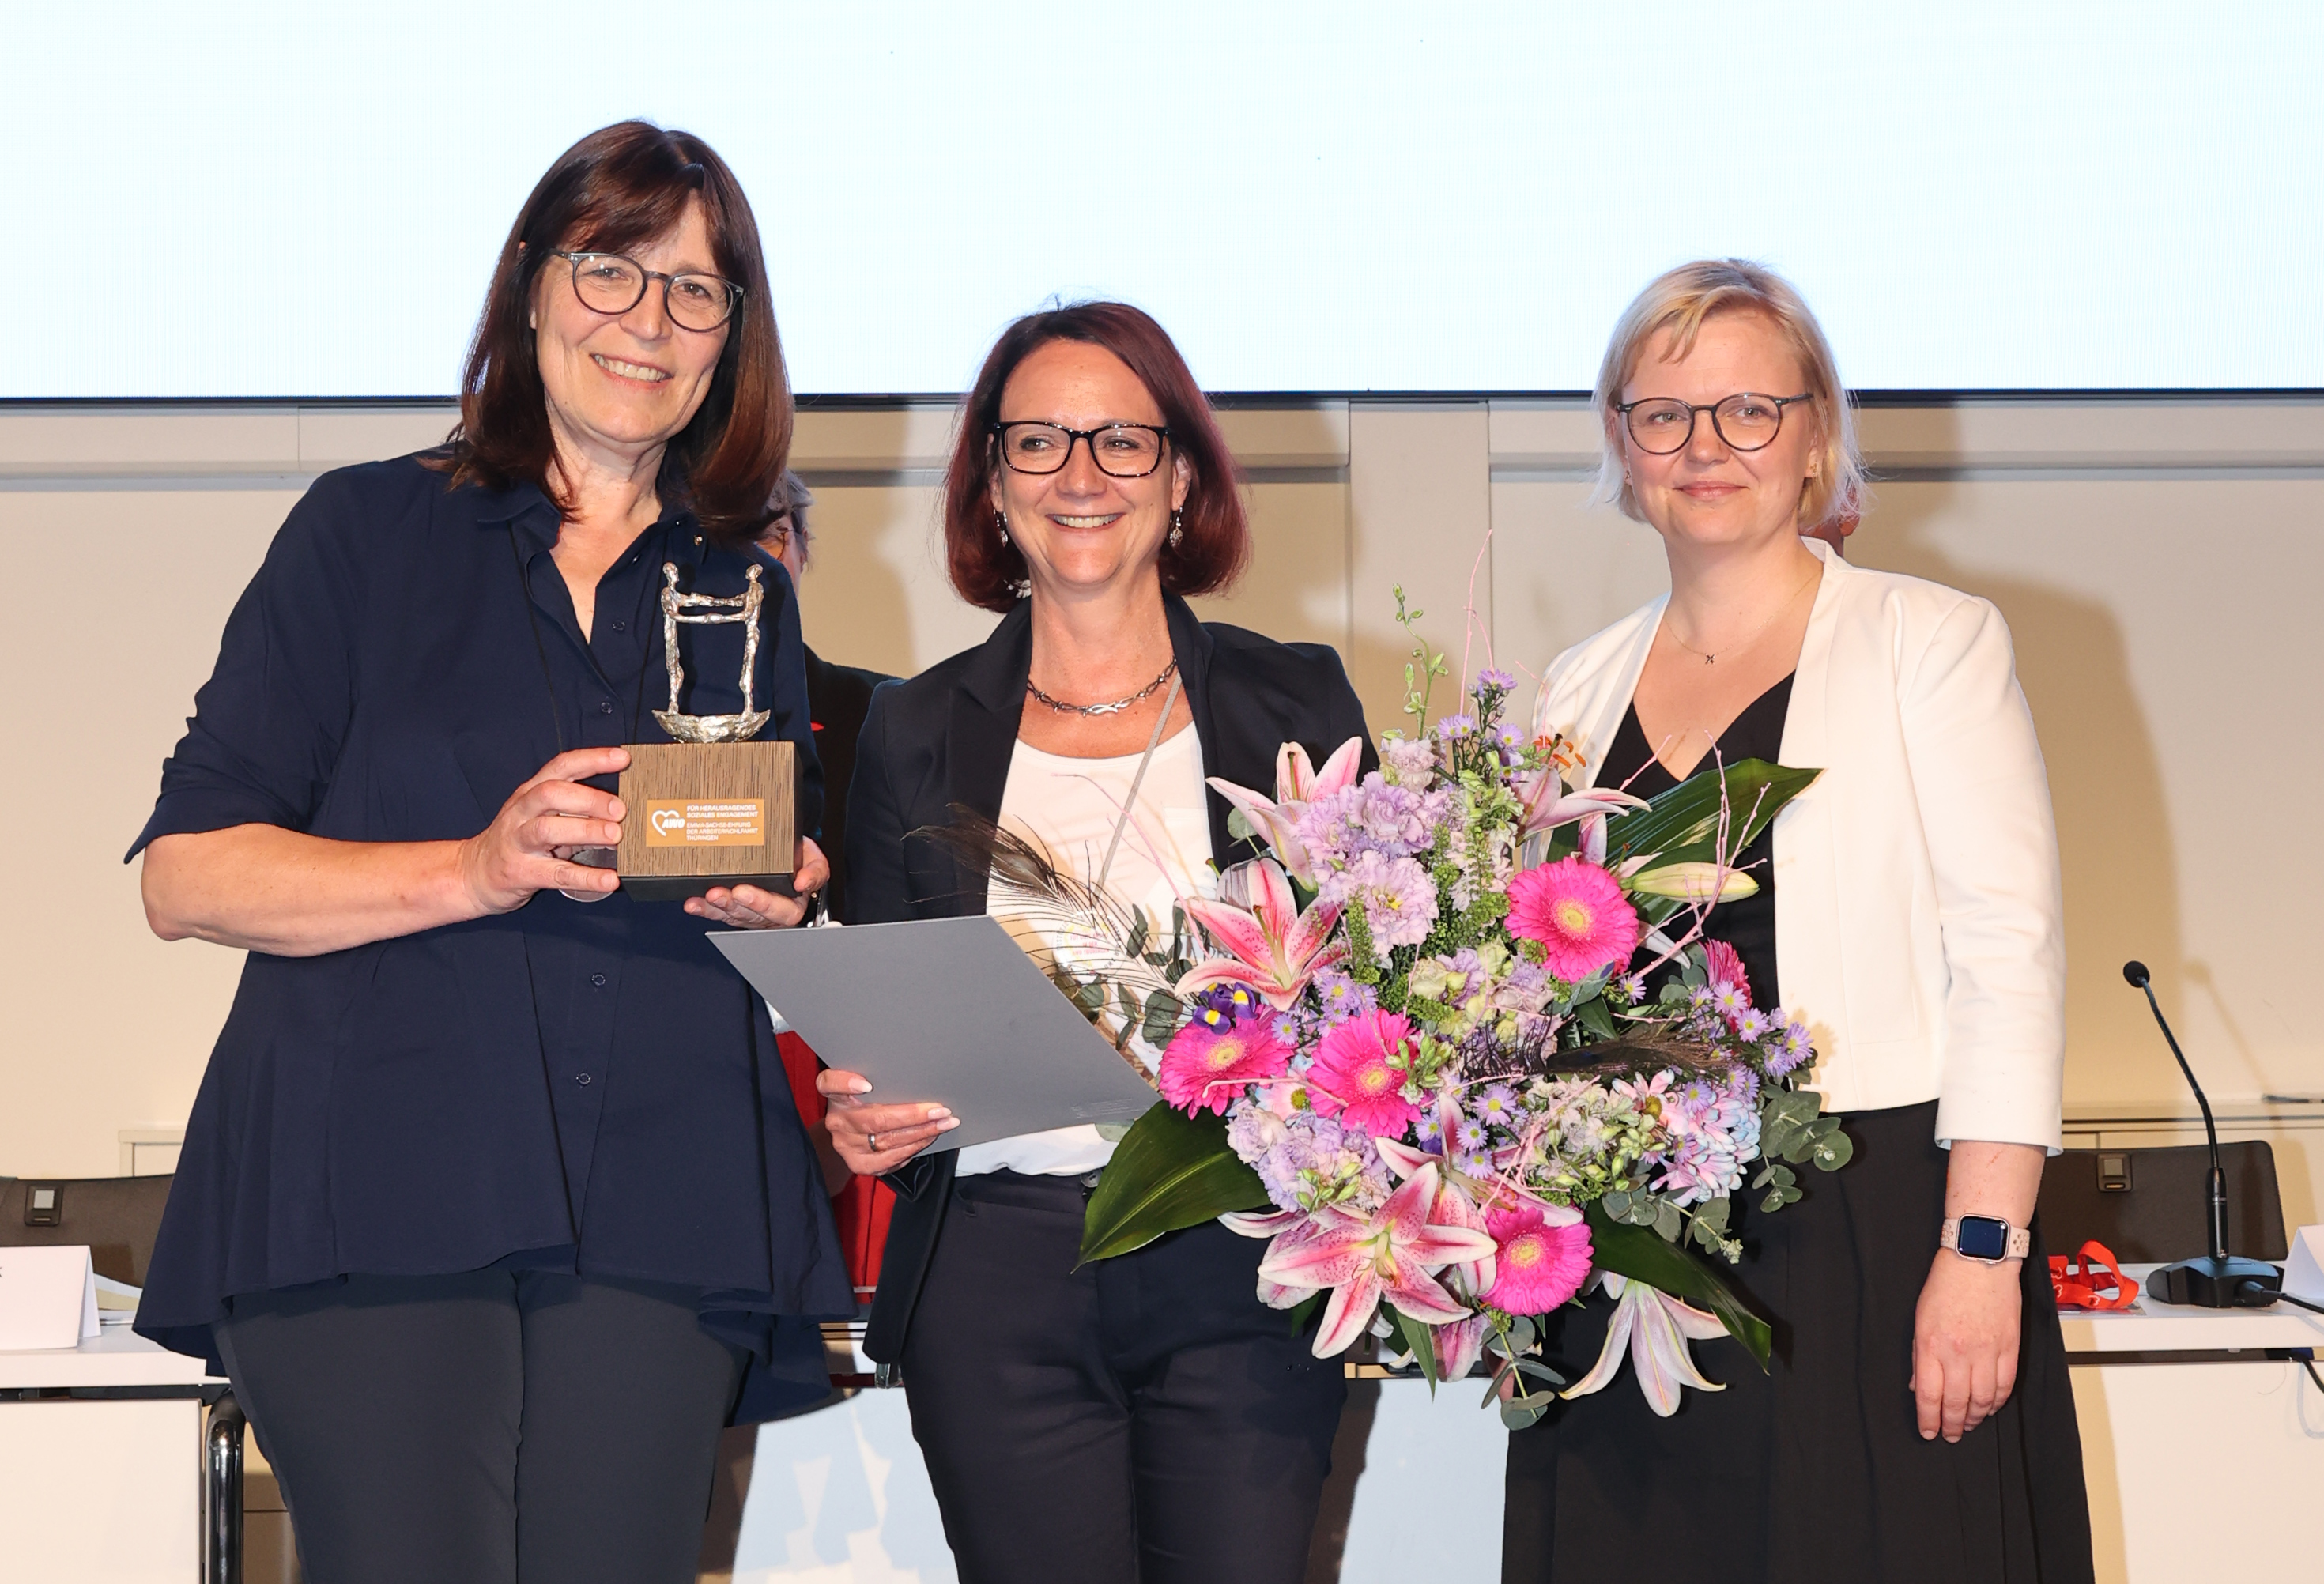 AWO-Landesvorsitzende Petra Rottschalk (links) und AWO-Landesgeschäftsführerin Katja Glybowskaja (rechts) überreichen Claudia Zanker die Emma-Sachse-Ehrung, die höchste Auszeichnung der AWO Thüringen.